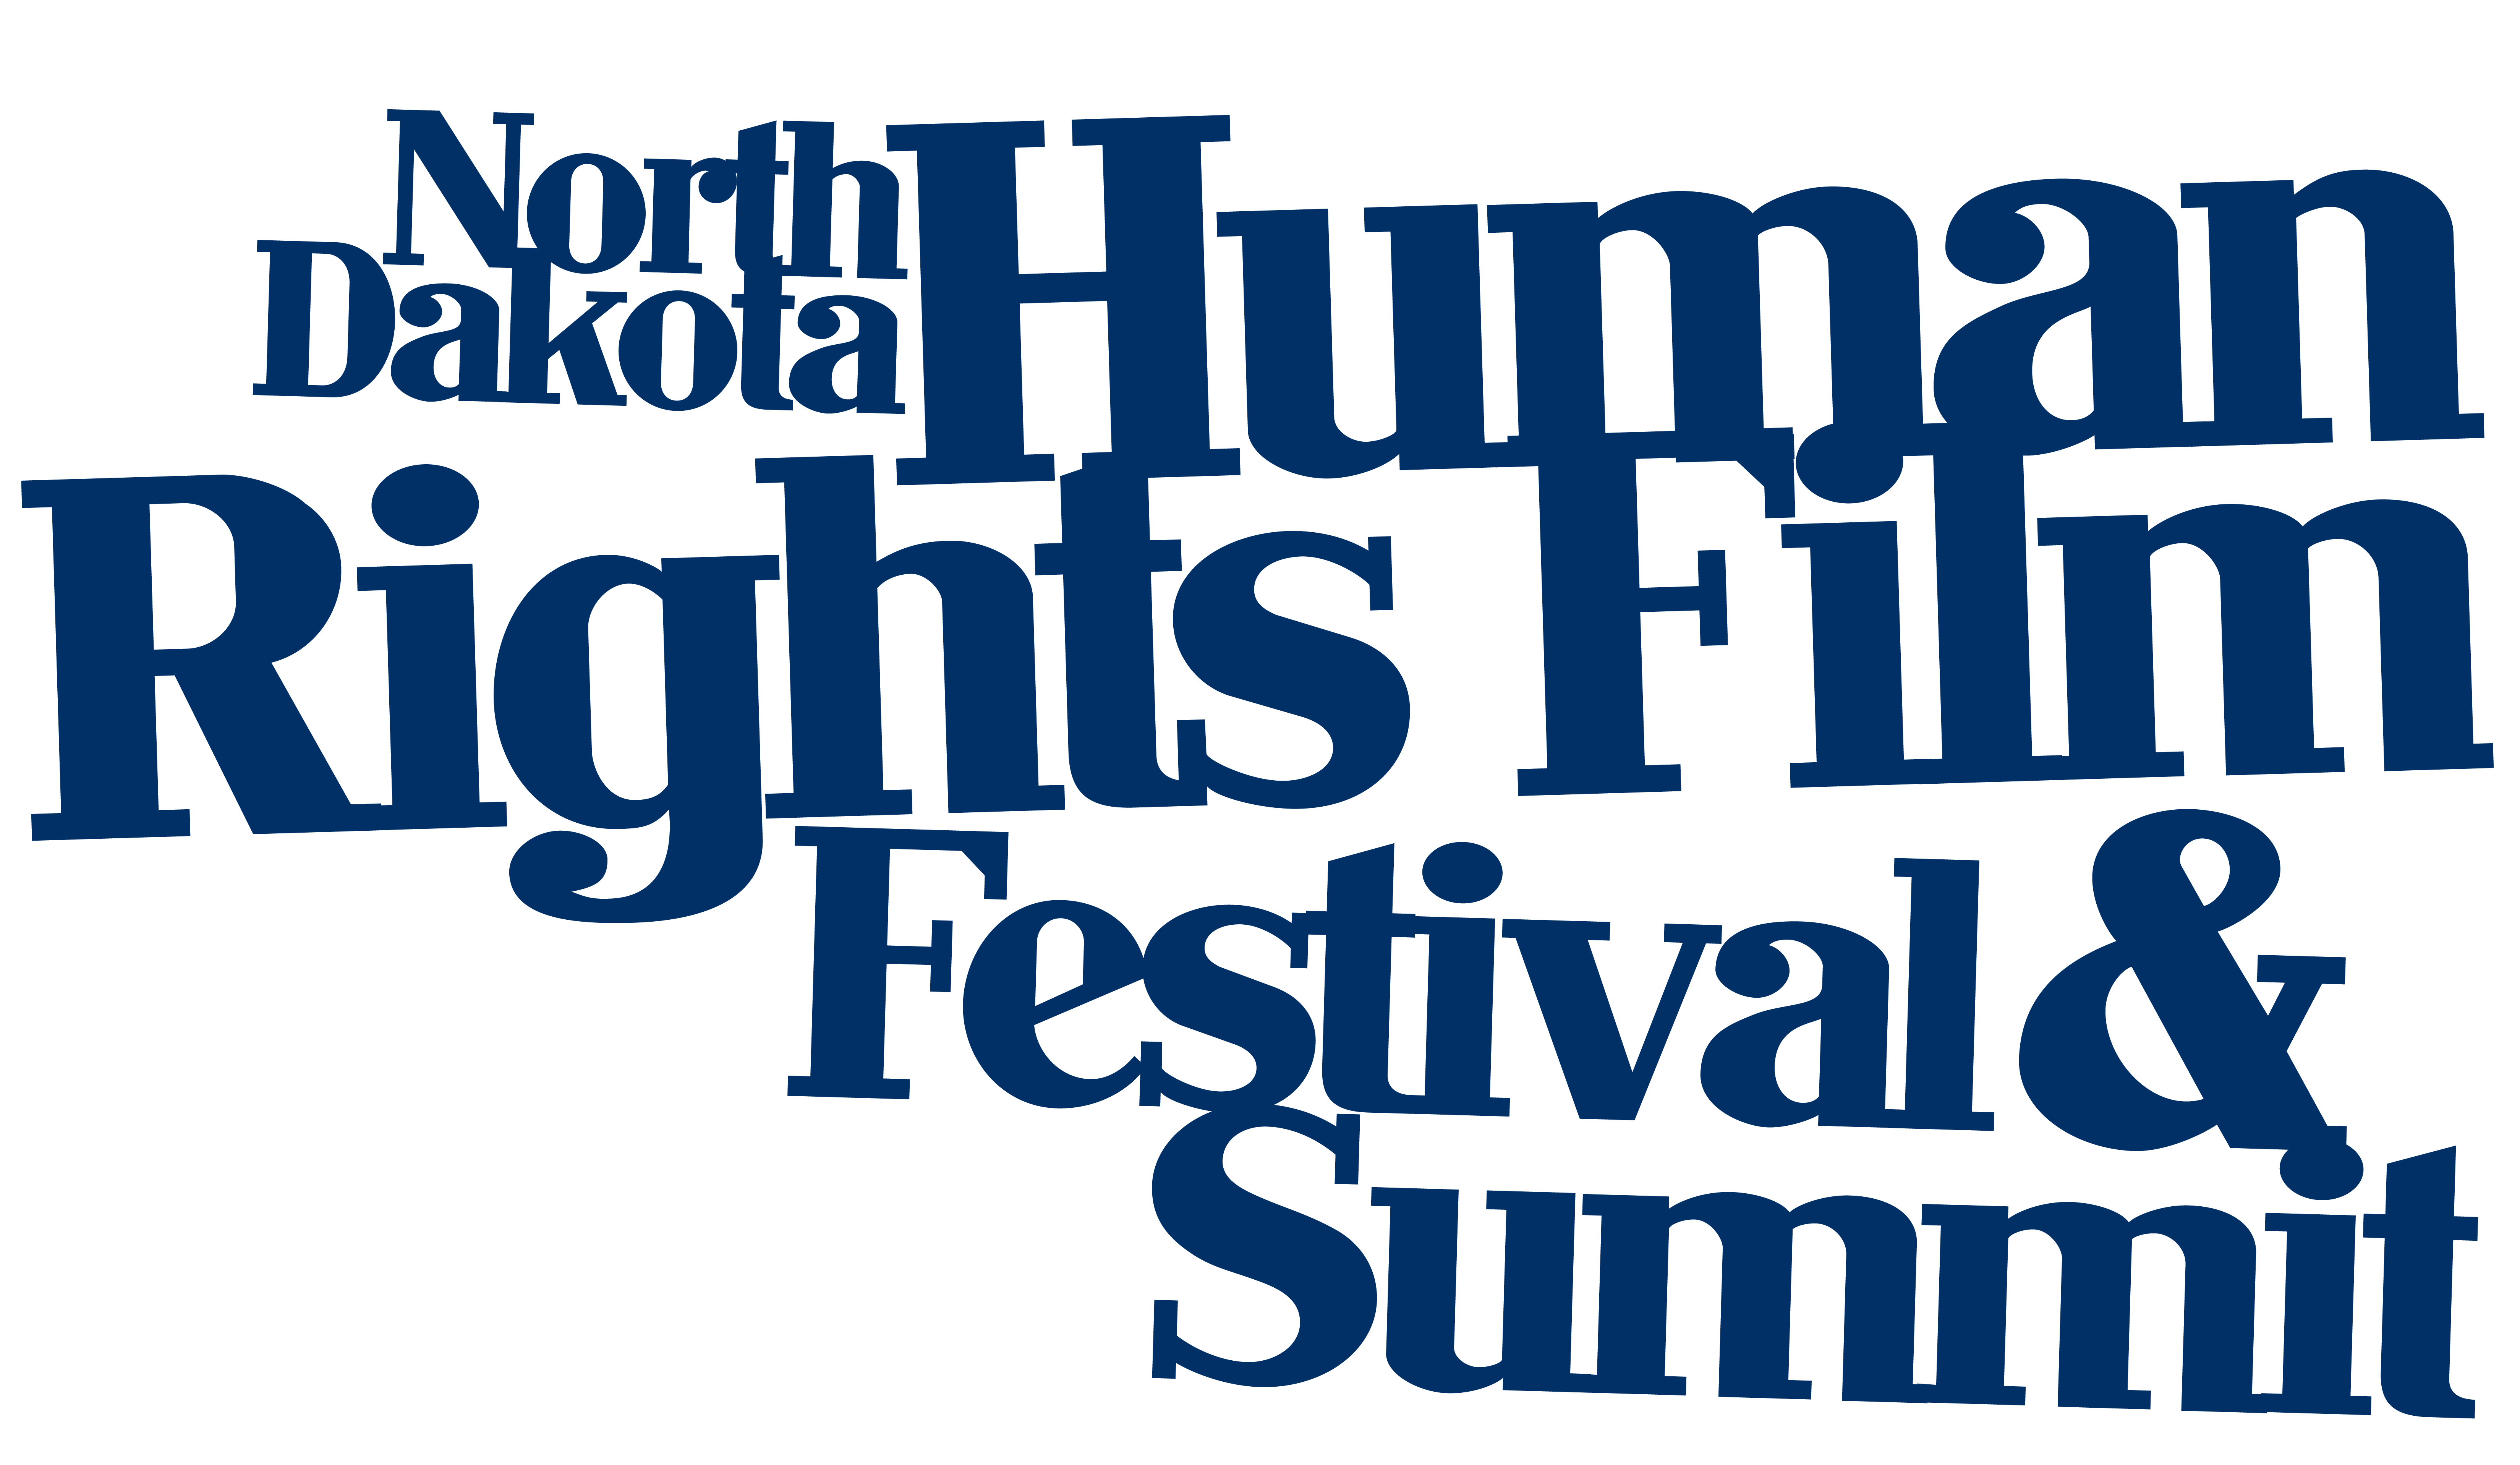 North Dakota Human Rights Film Festival and Summit